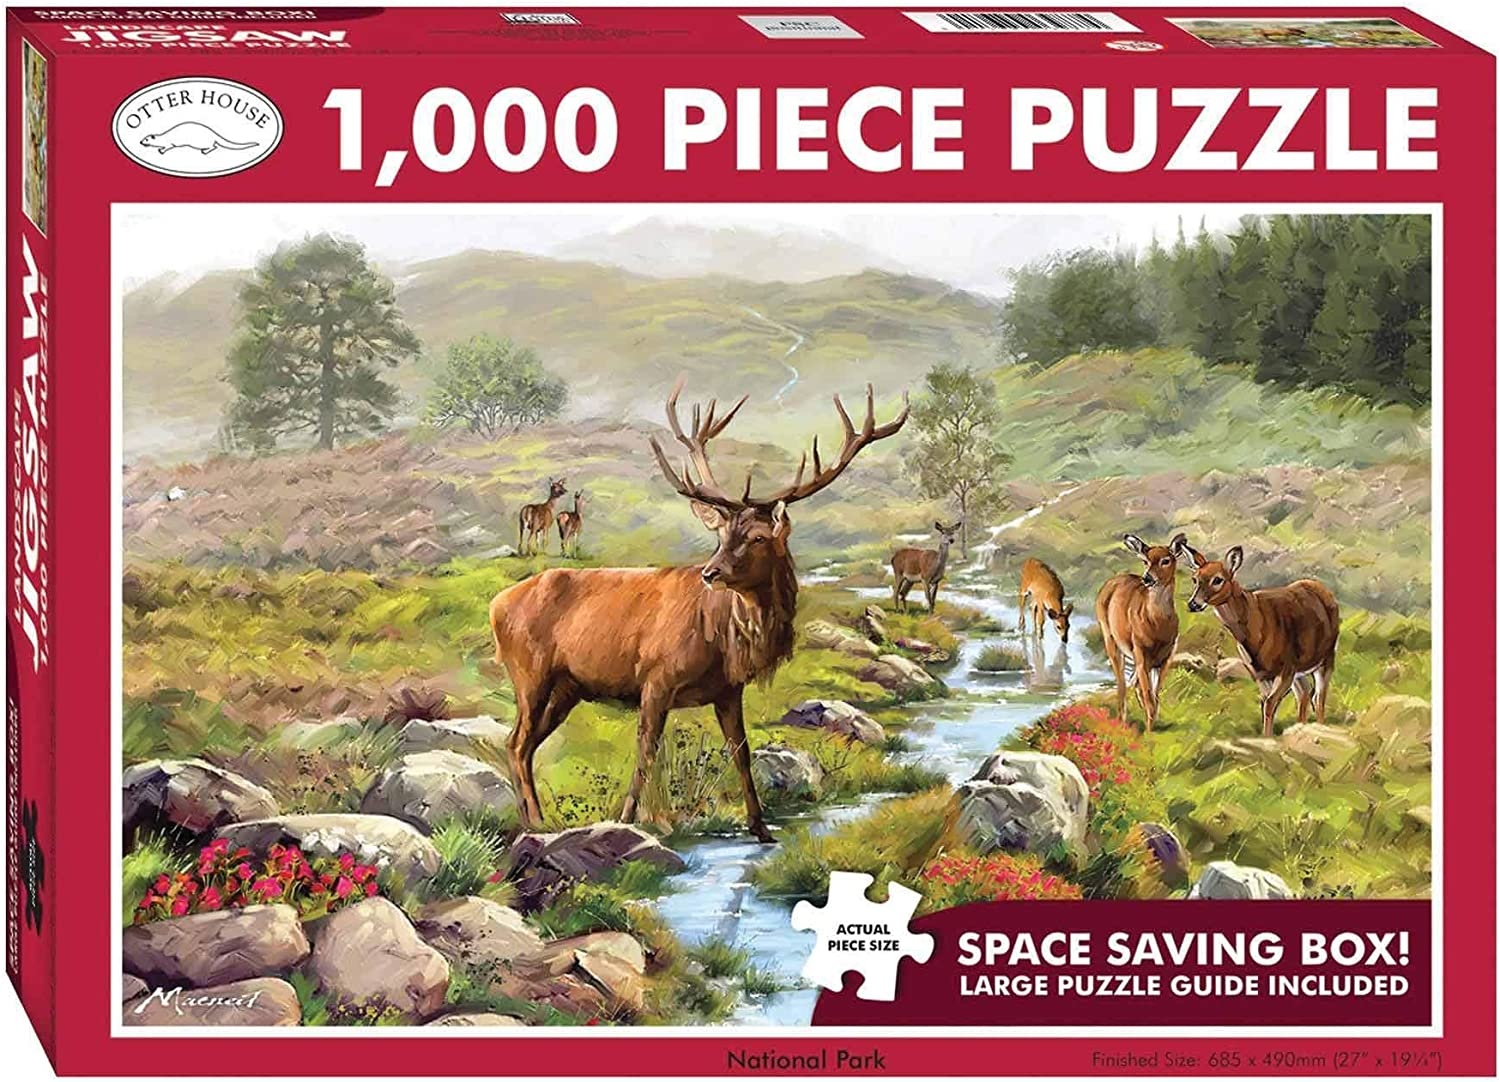 Otter House 1000 Piece Landscape Jigsaw Puzzle National Park